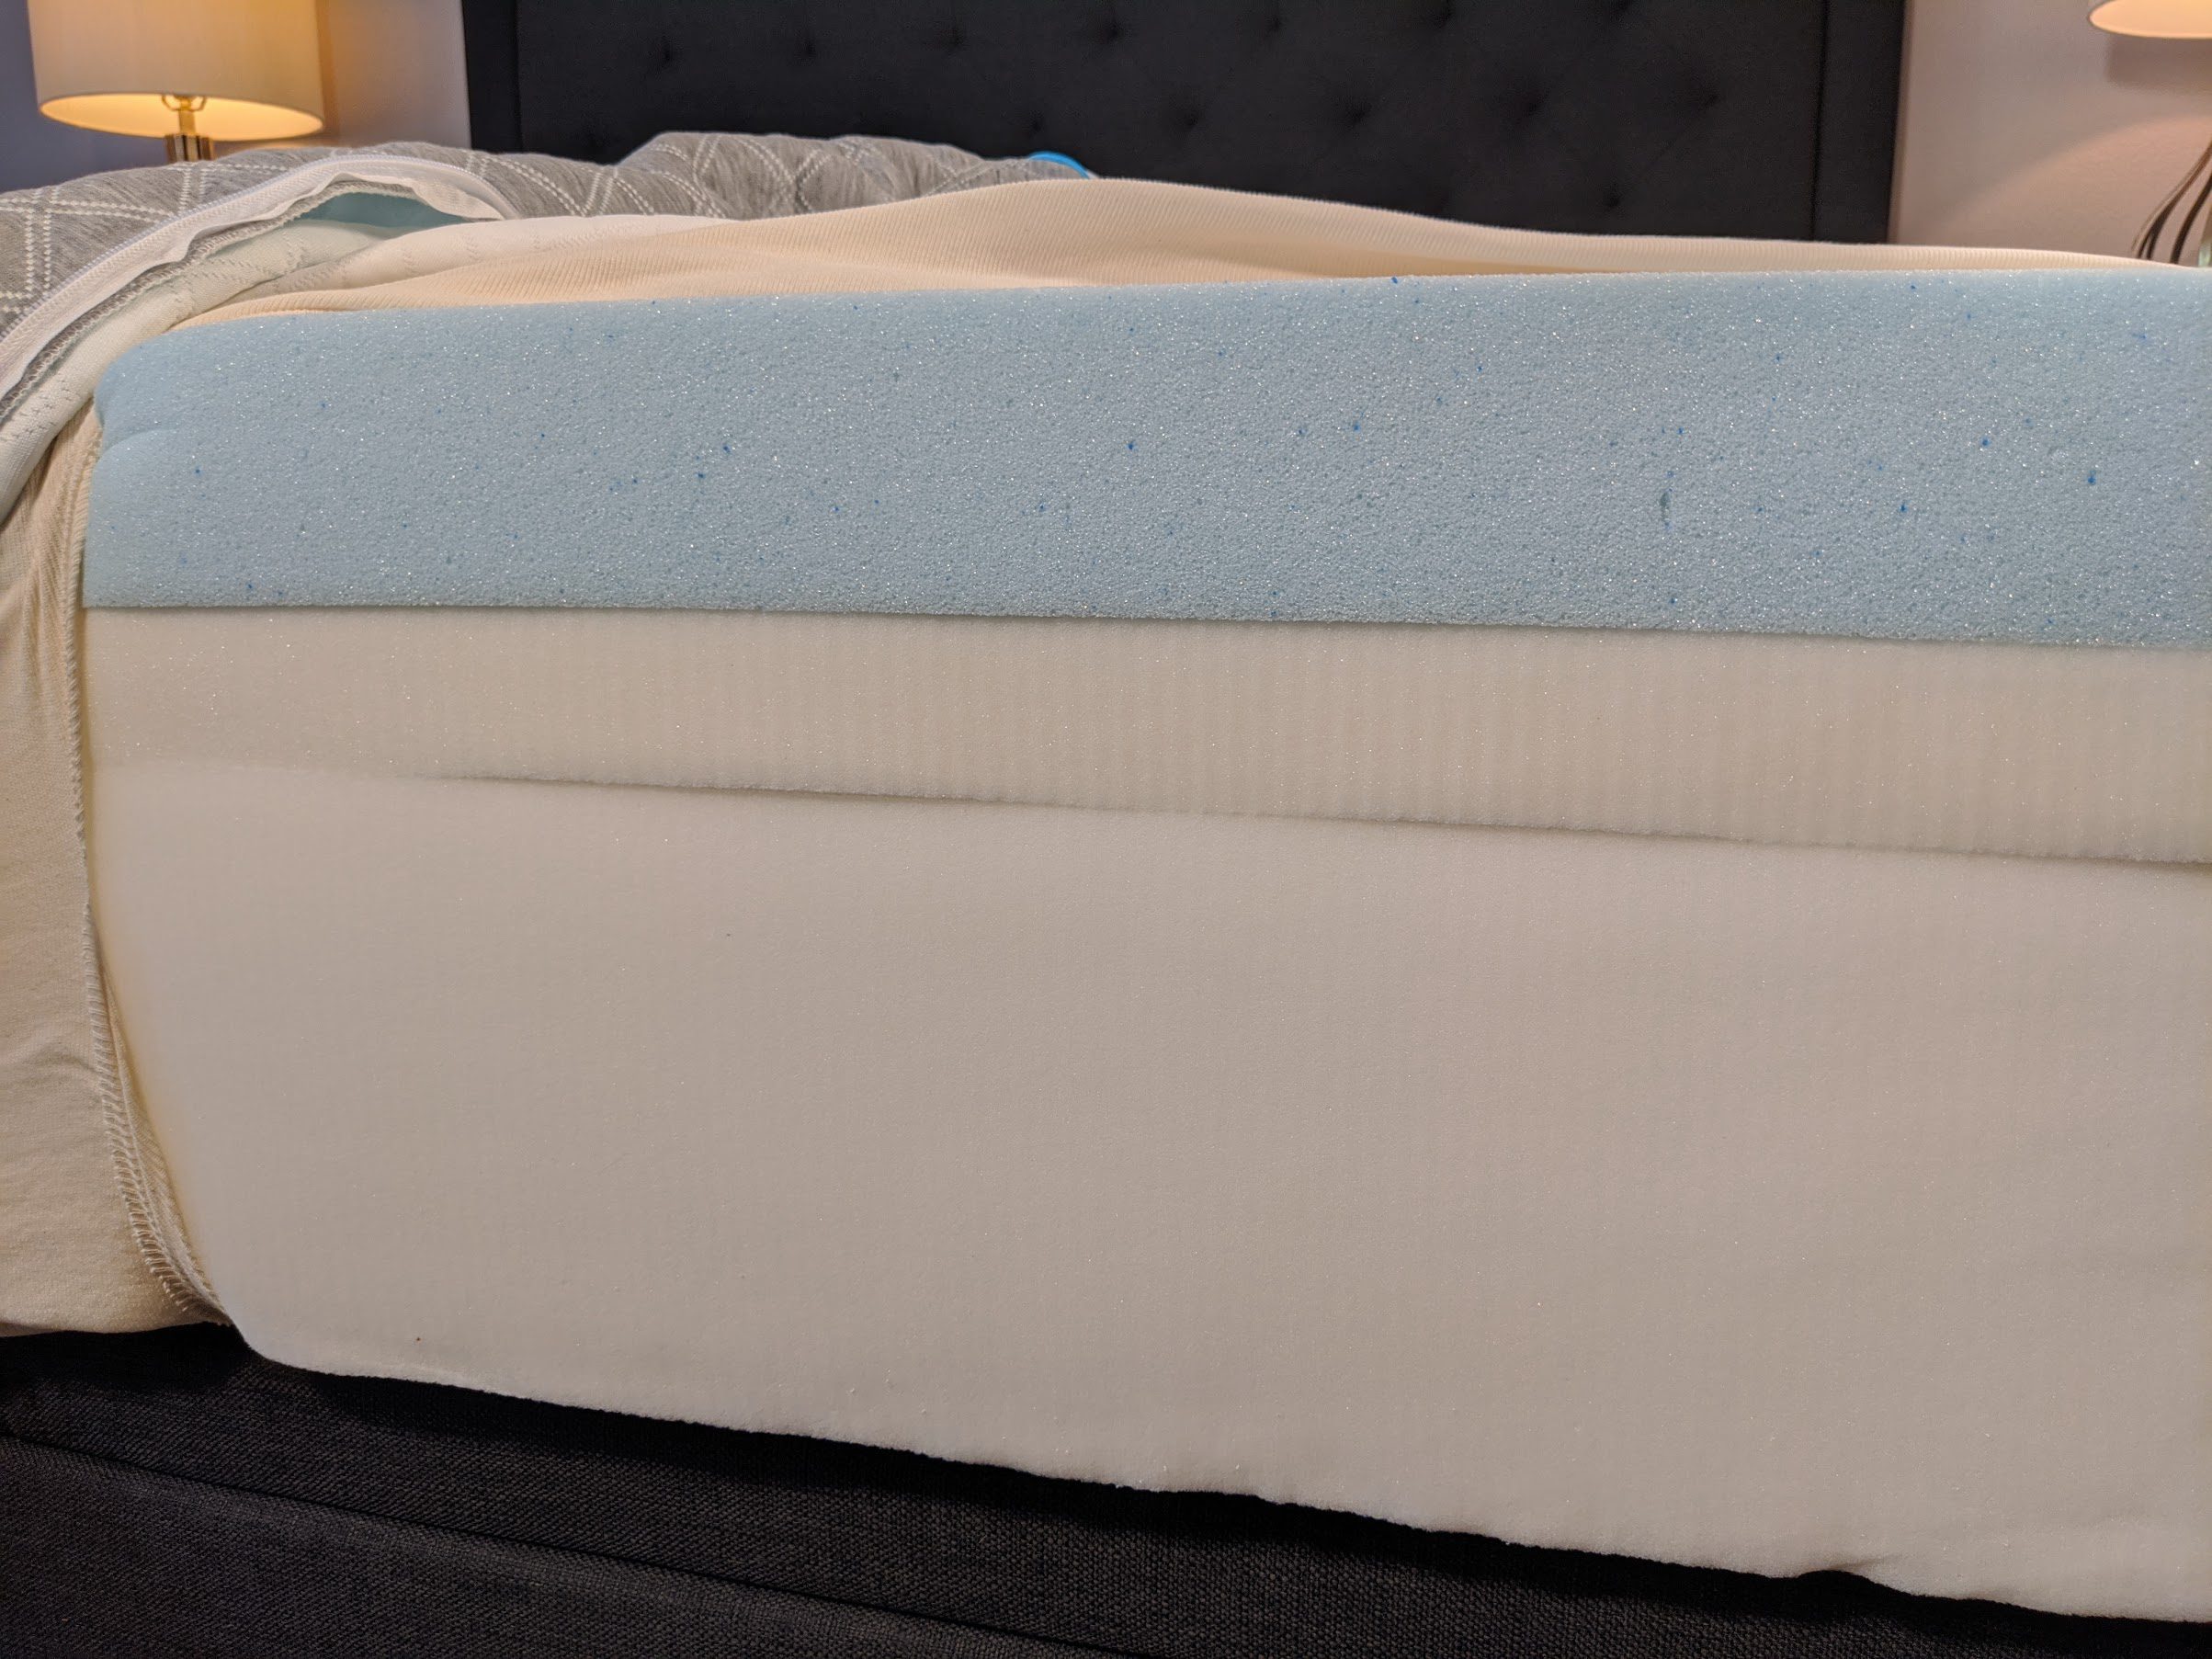 inside the idle foam mattress